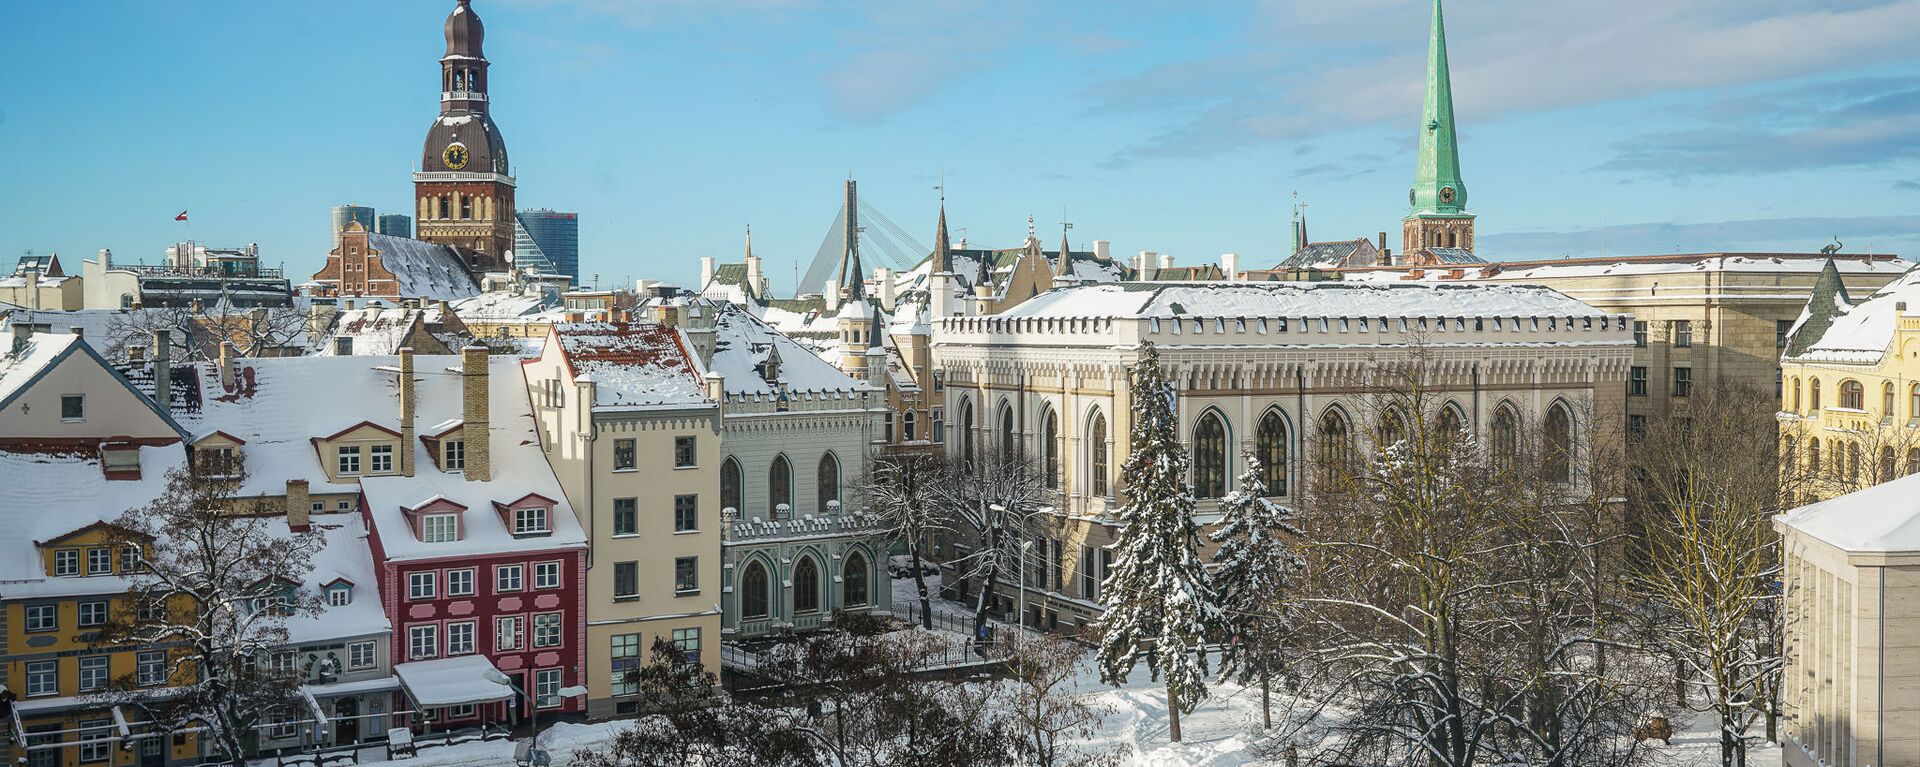 Вид на Старую Ригу и Домский собор зимой - Sputnik Латвия, 1920, 14.11.2021